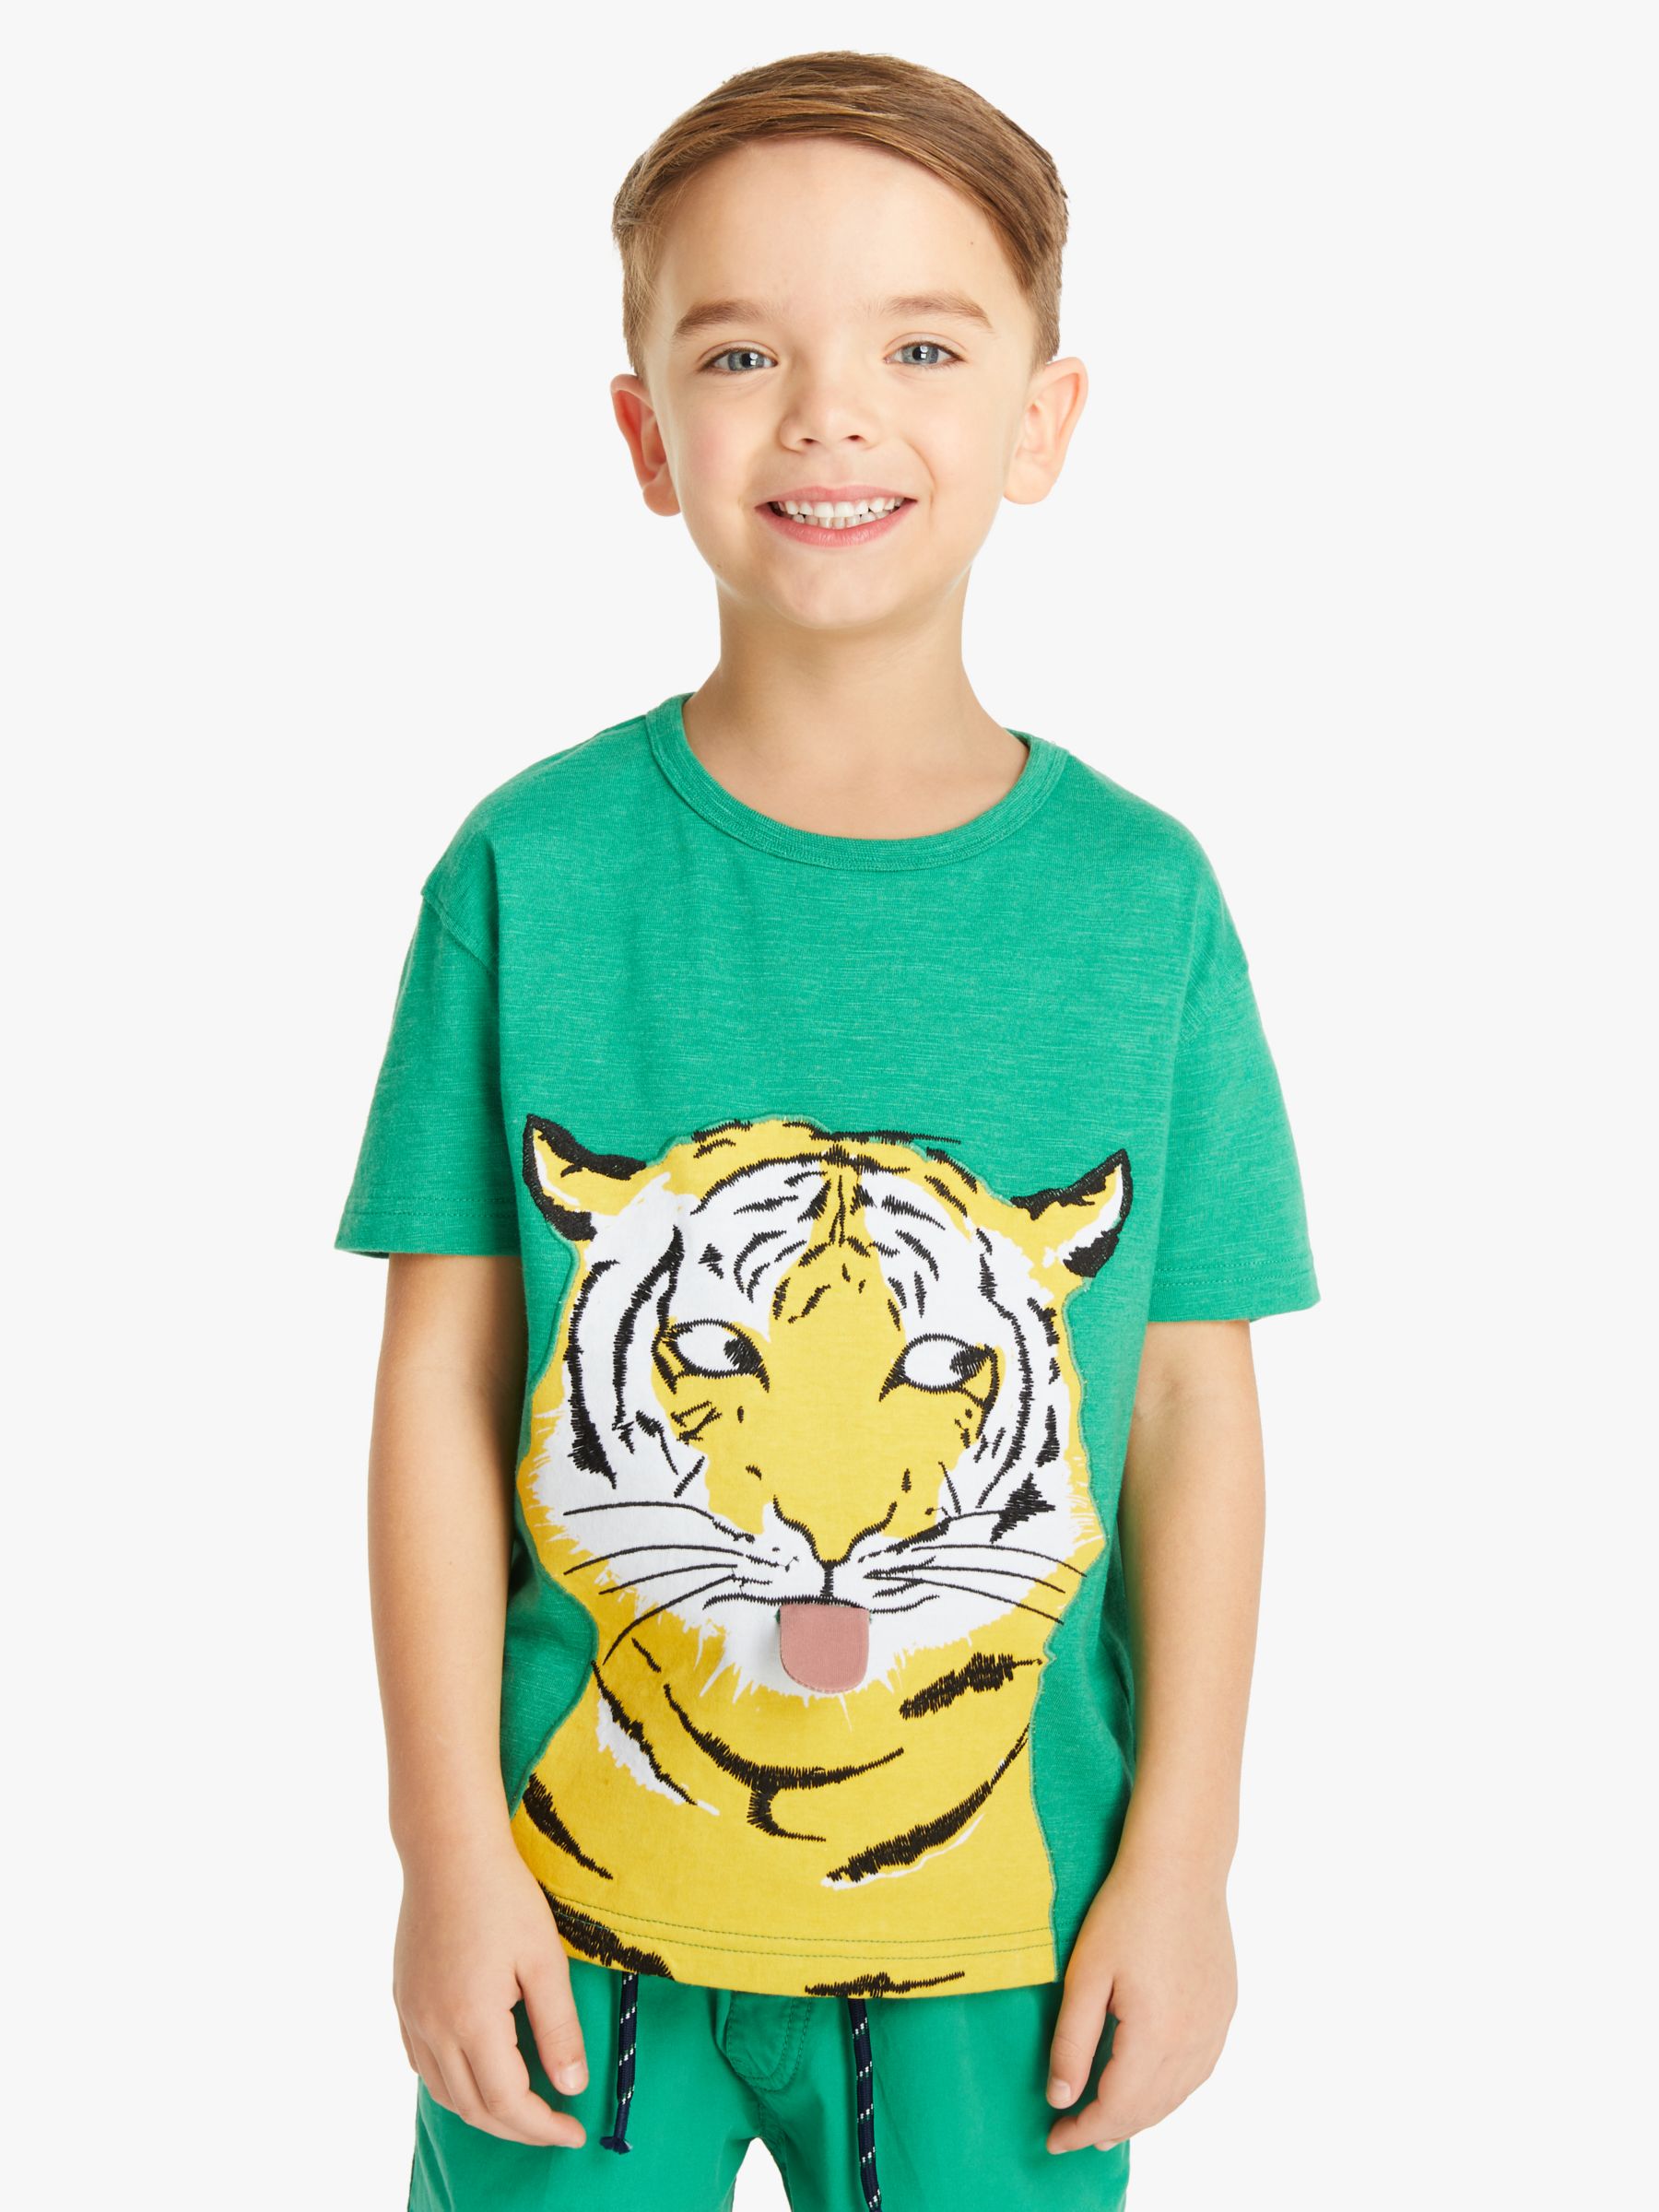 tiger print shirt boy